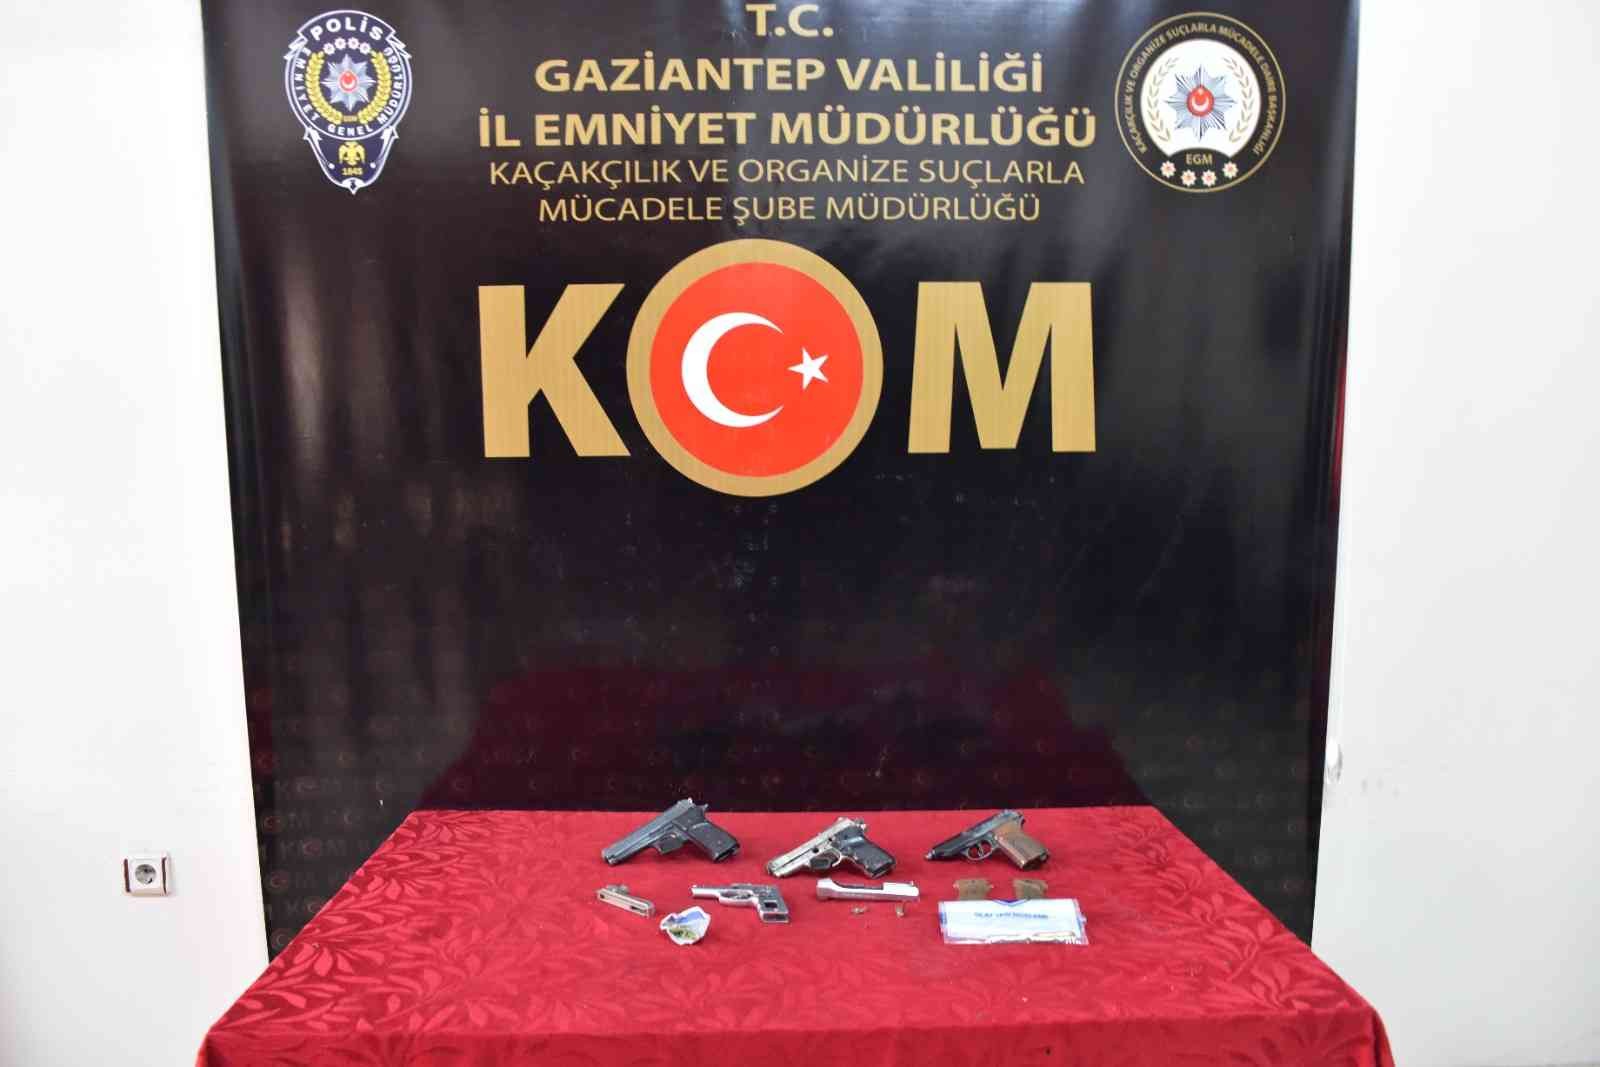 Silah kaçakçılarına operasyon: 3 şüpheli yakalandı #gaziantep